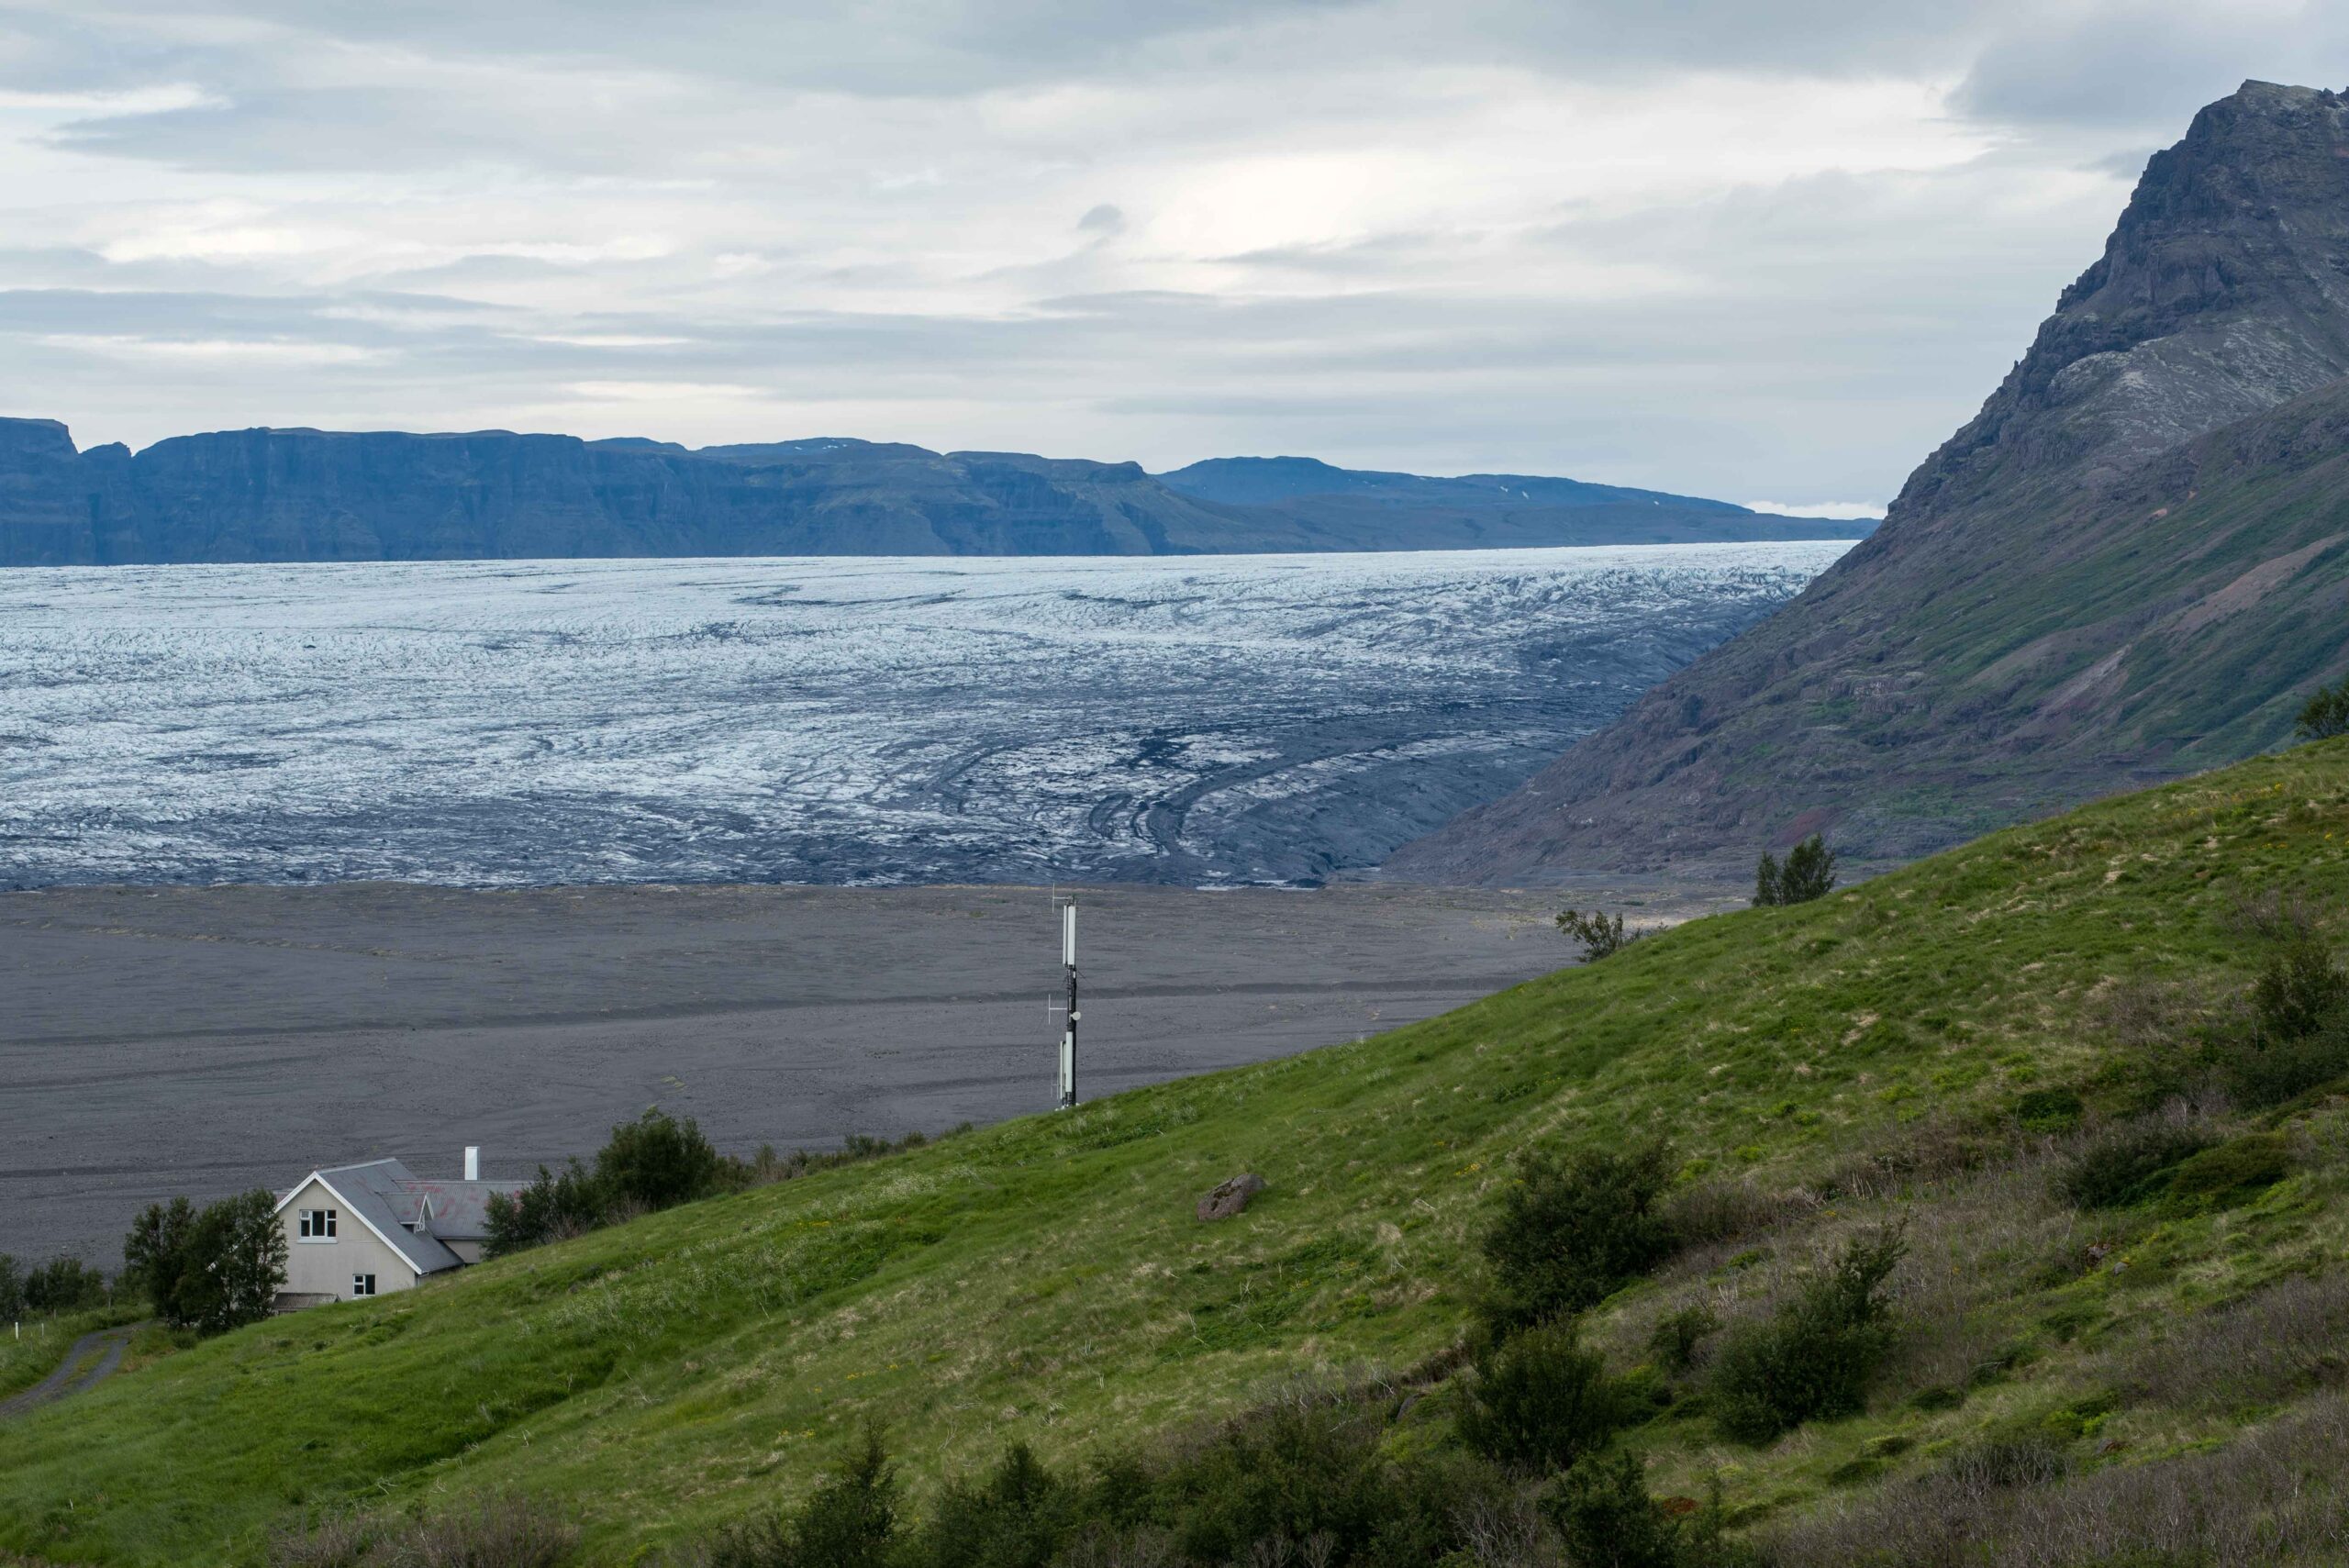 Oostkant van de Skeiðarárjökull in 1974 (links) en 2023, gezien vanaf Vörðusker met Hæðir op de voorgrond. De gletsjer is veel dunner geworden. Bron 1974: Fotomuseum Reykjavik, foto INO 004 132 1-1.